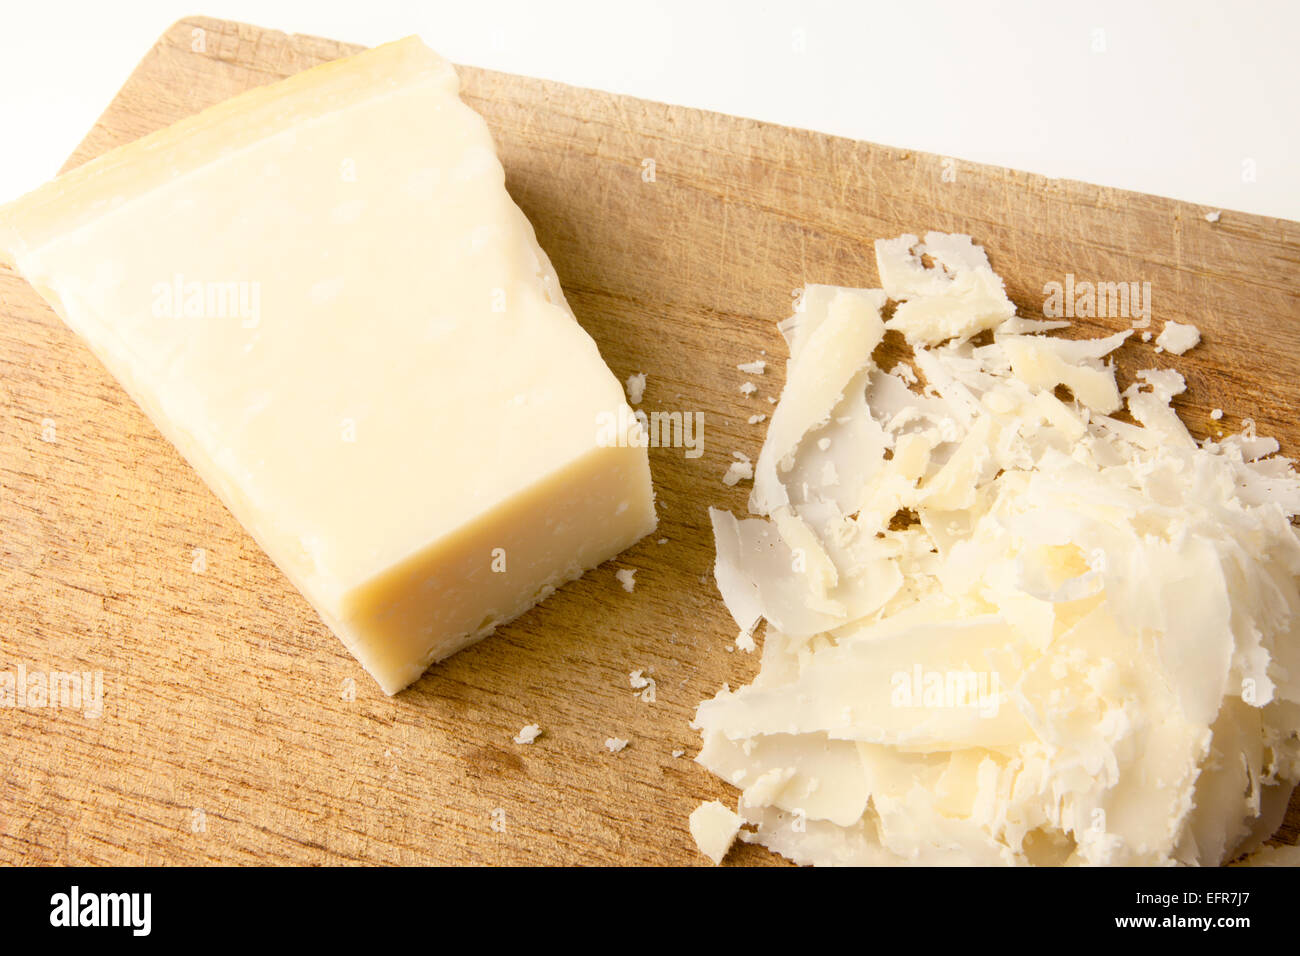 Bloc de fromage Parmesan et de copeaux de parmesan sur une planche en bois Banque D'Images